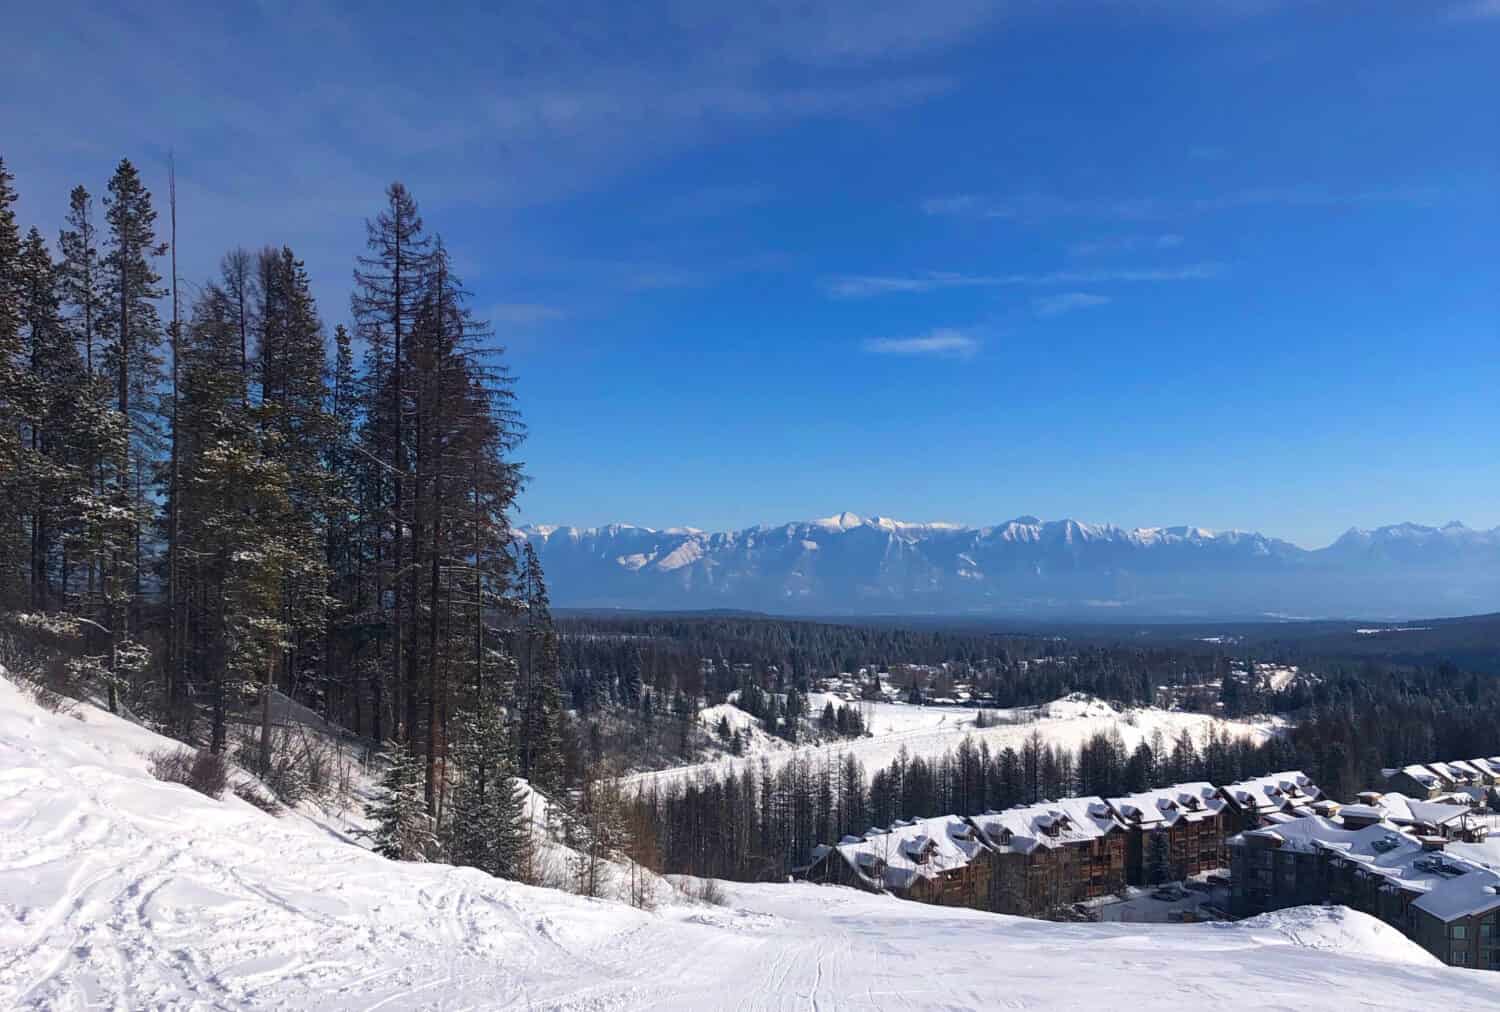 Kimberley British Columbia ski resort views of Rocky Mountains